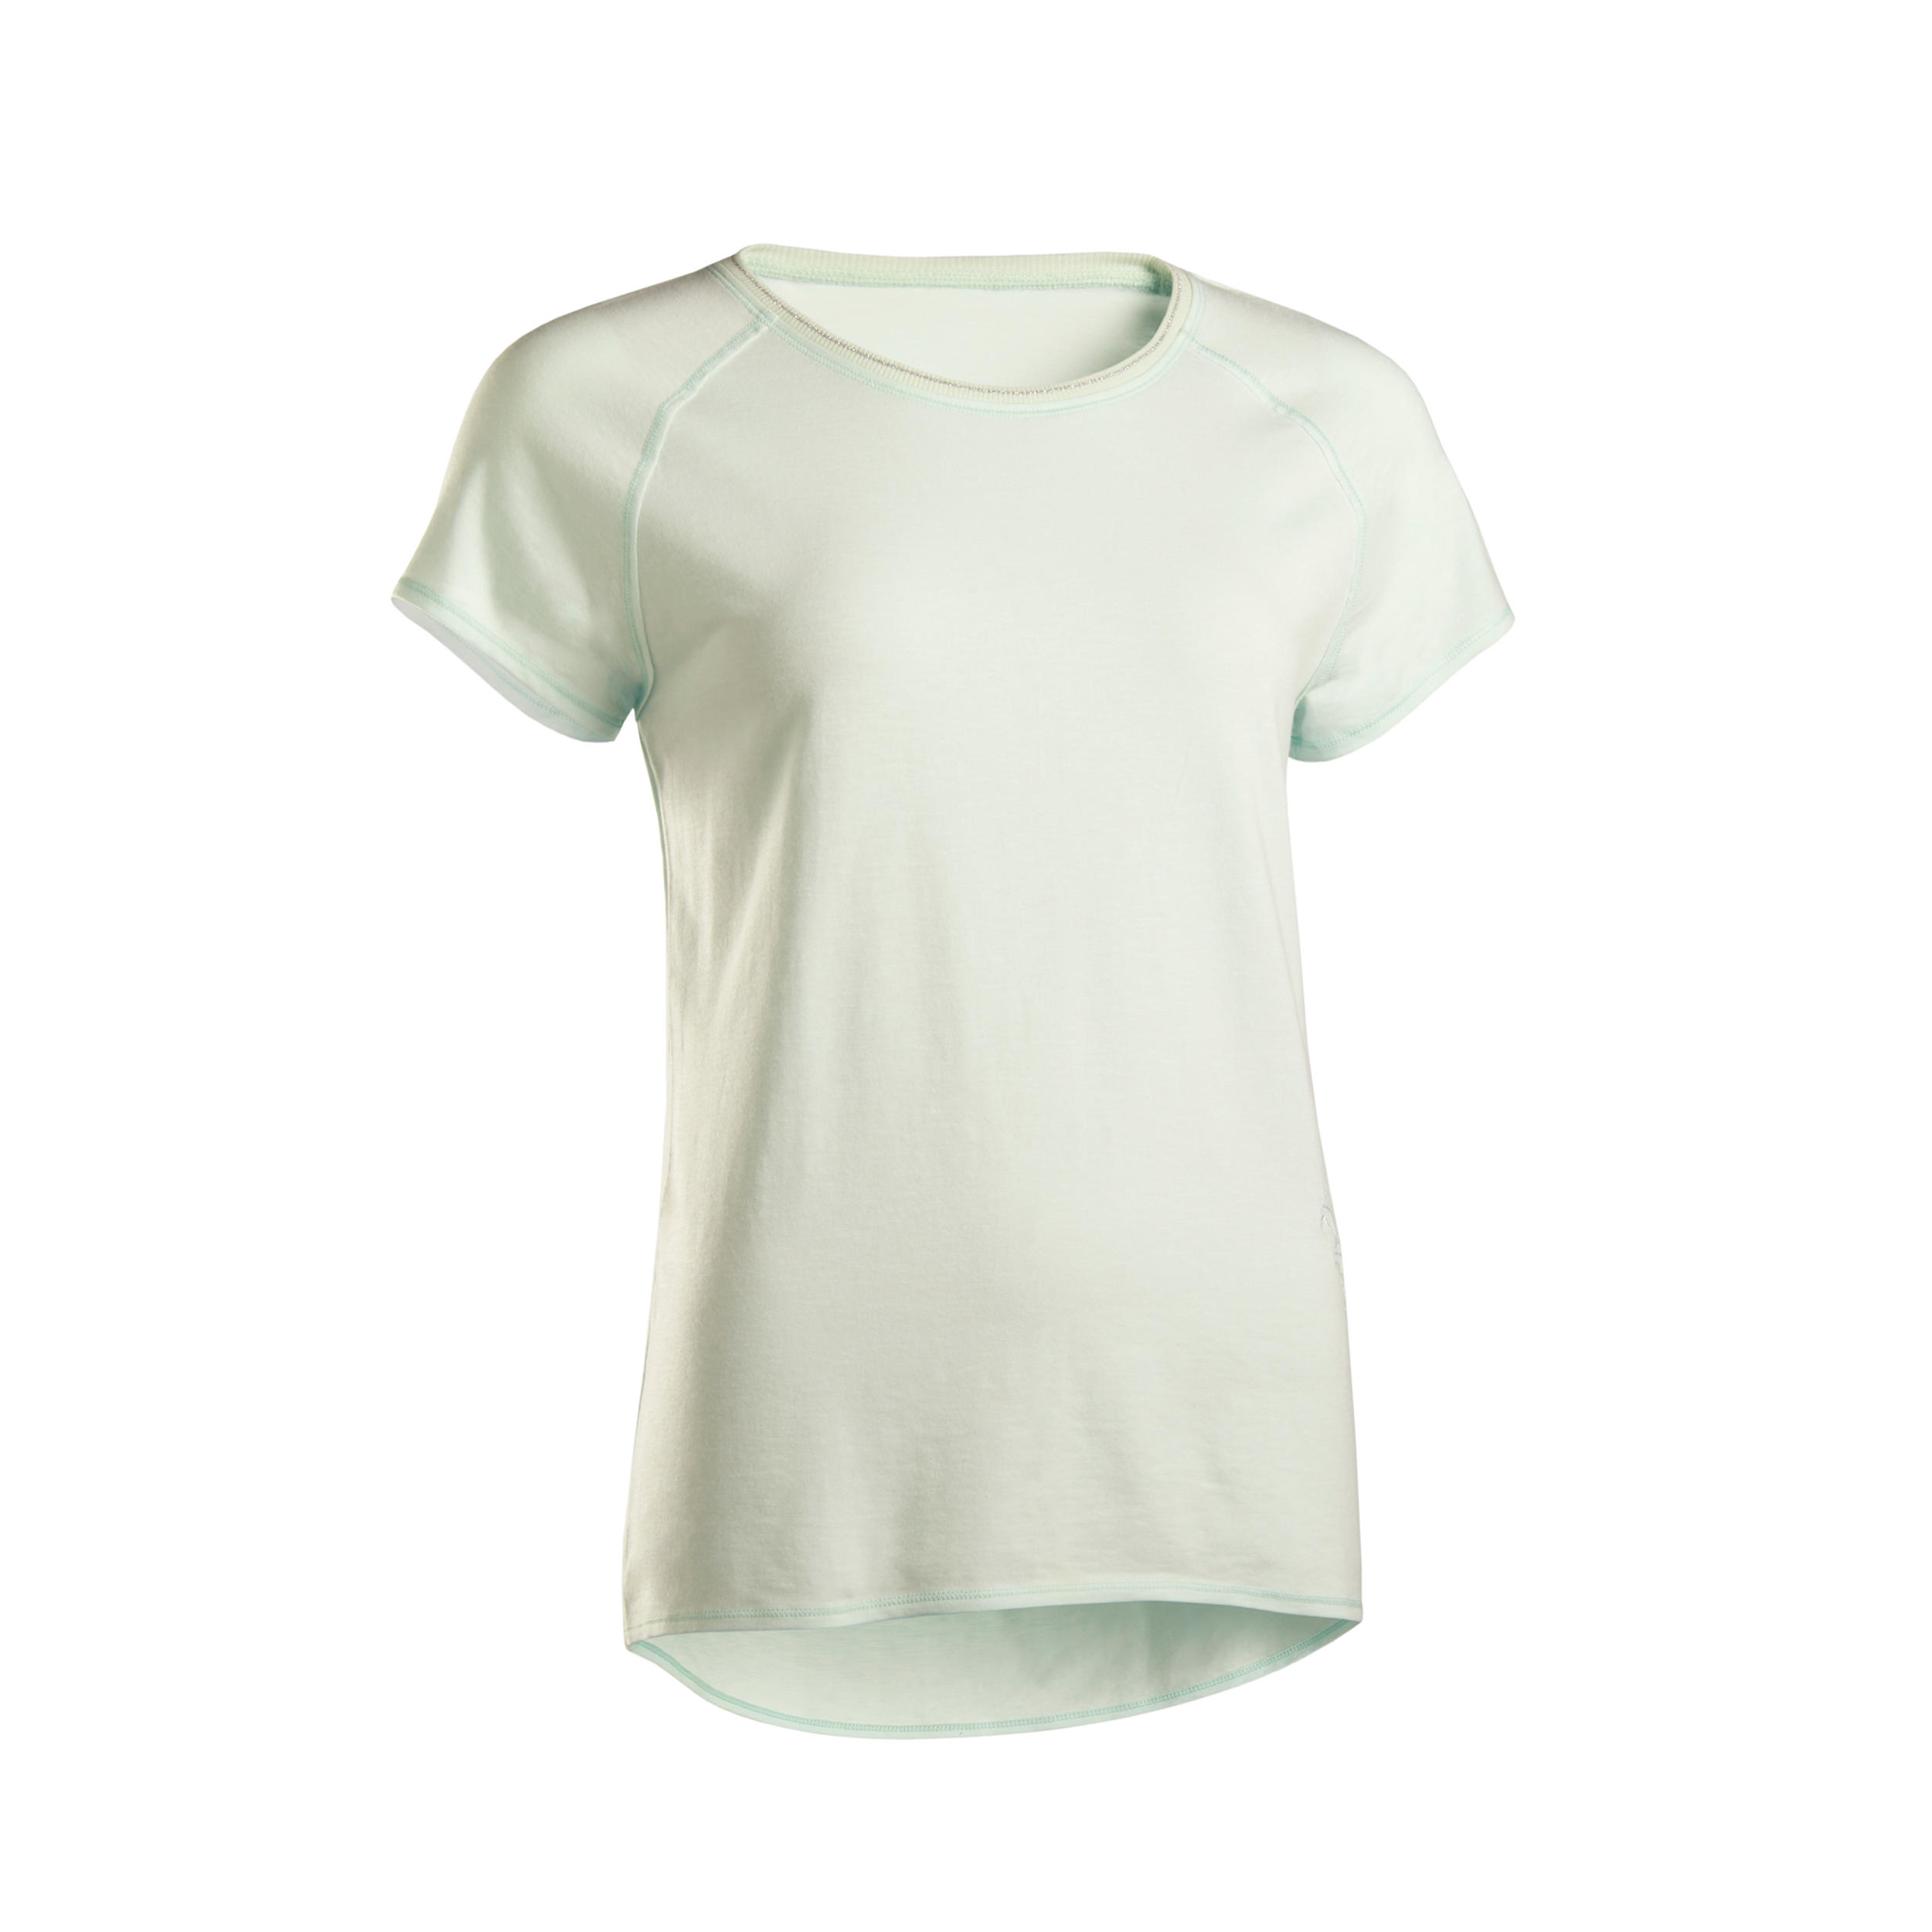 KIMJALY Decathlon - T-shirt donna yoga cotone bio verde con ricamo -